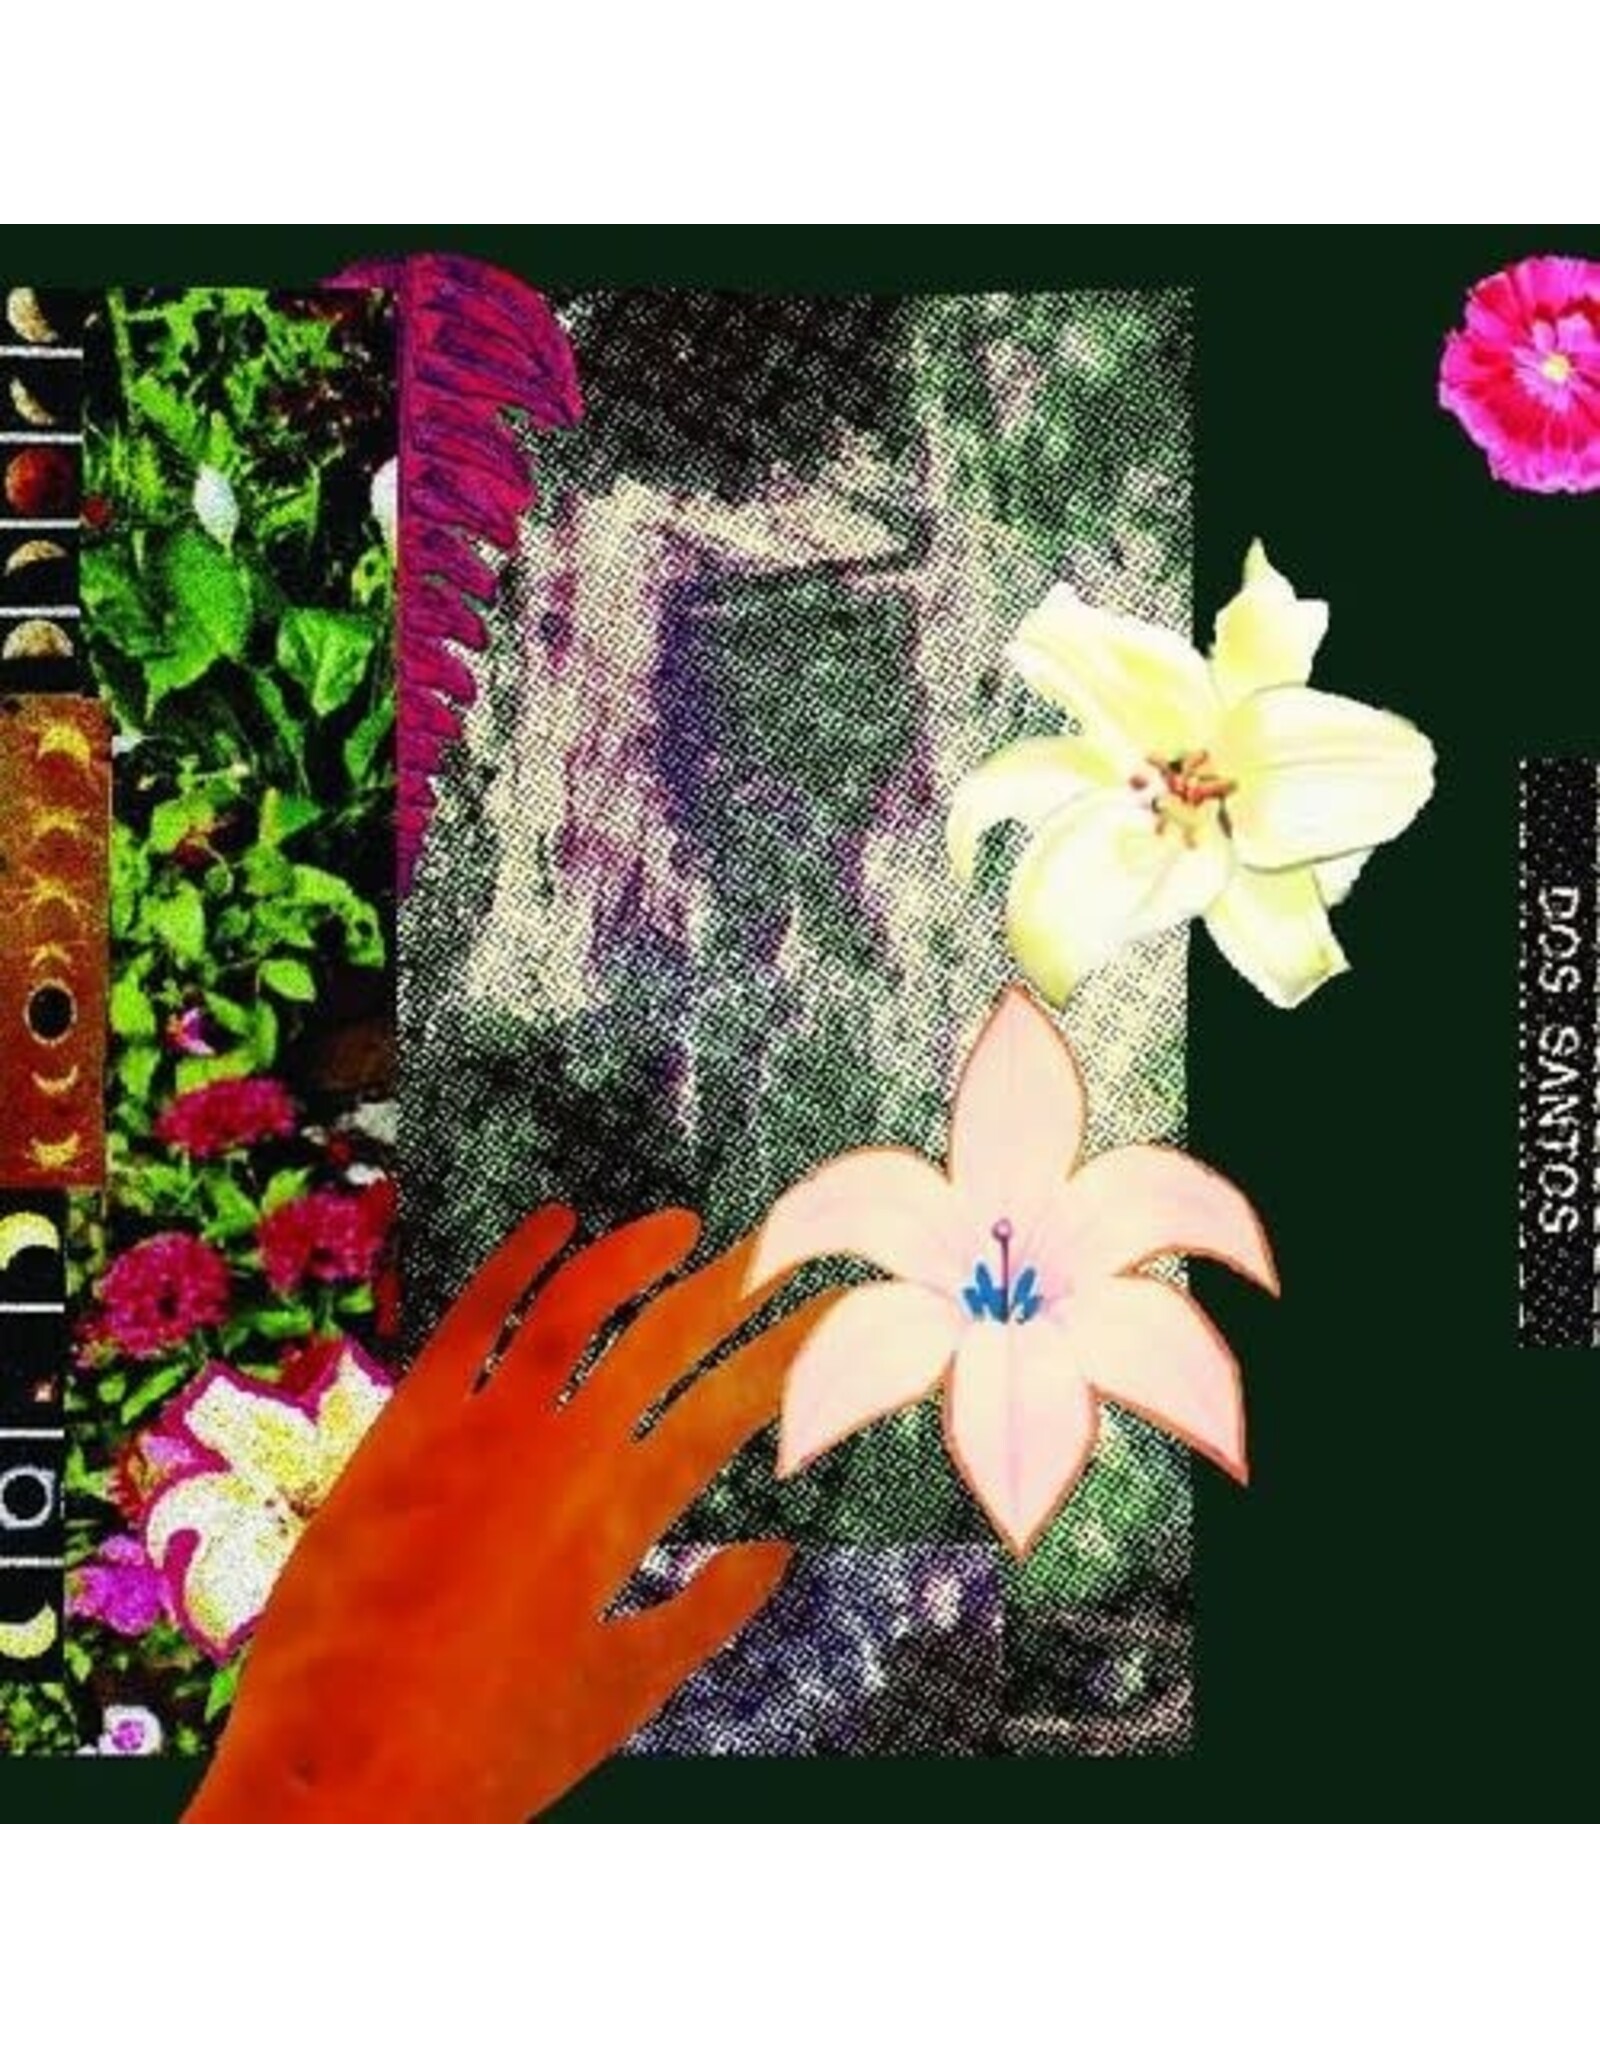 Dos Santos / City Of Mirrors - Azucena Dreams Color Vinyl